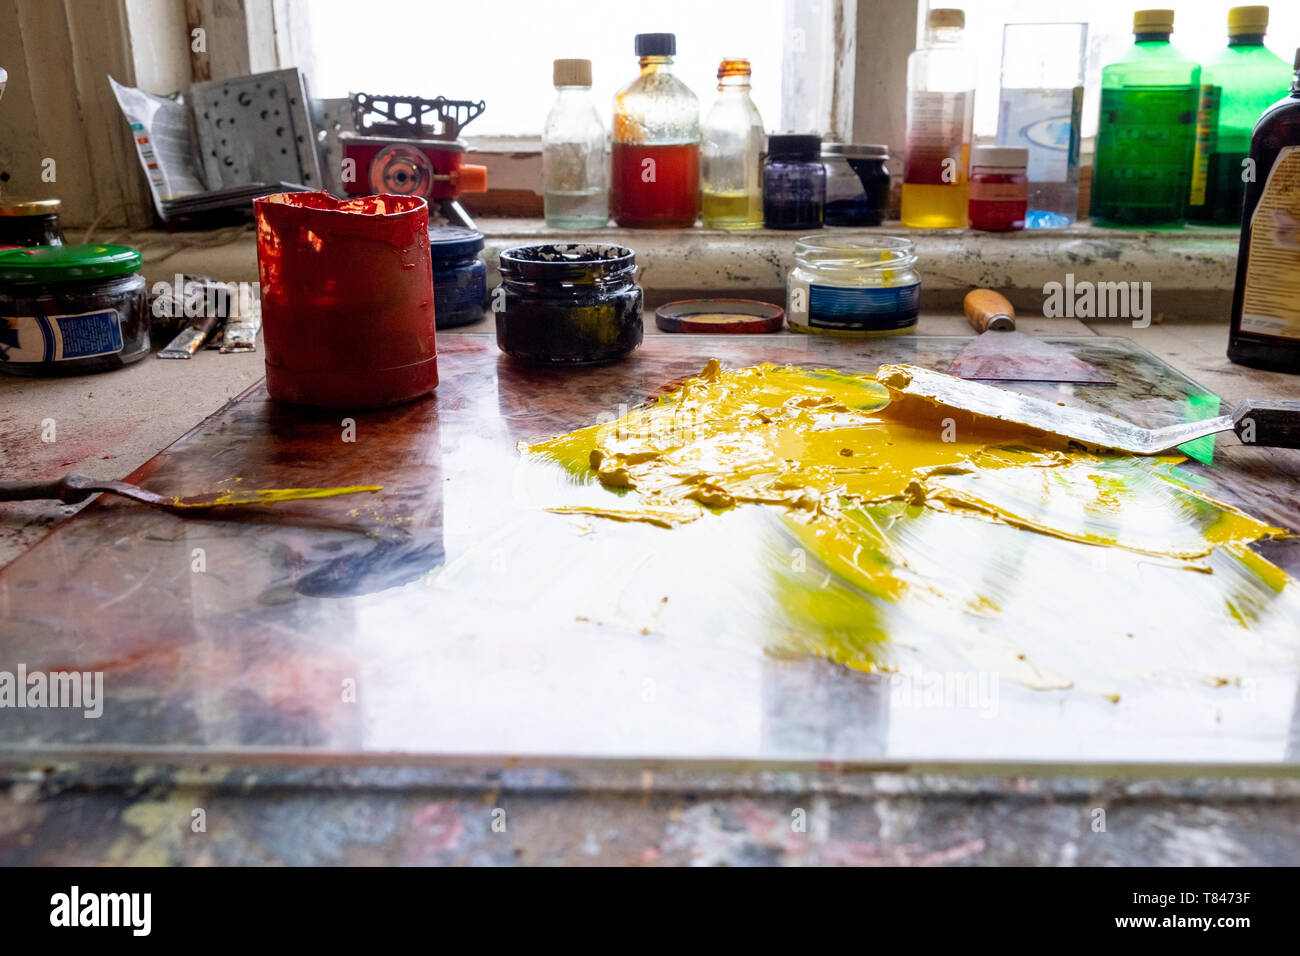 Spilt yellow paint on table Stock Photo